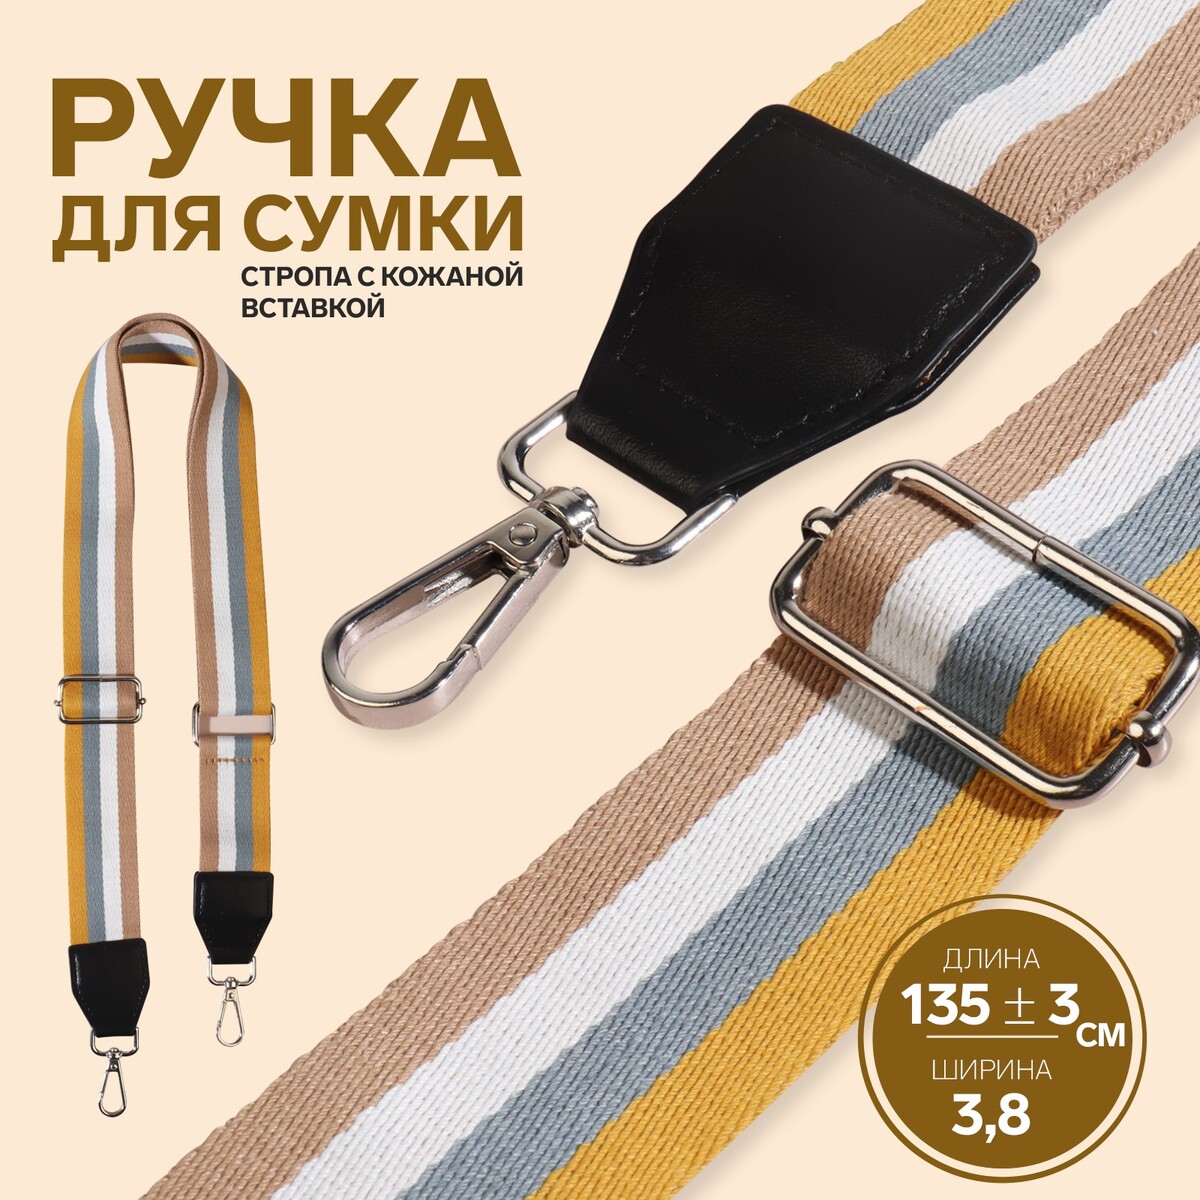 Ручка для сумки, стропа с кожаной вставкой, 135 ± 3 × 3,8 см, цвет желтый/серый/белый/бежевый ручка для сумки 34 × 1 5 см серый